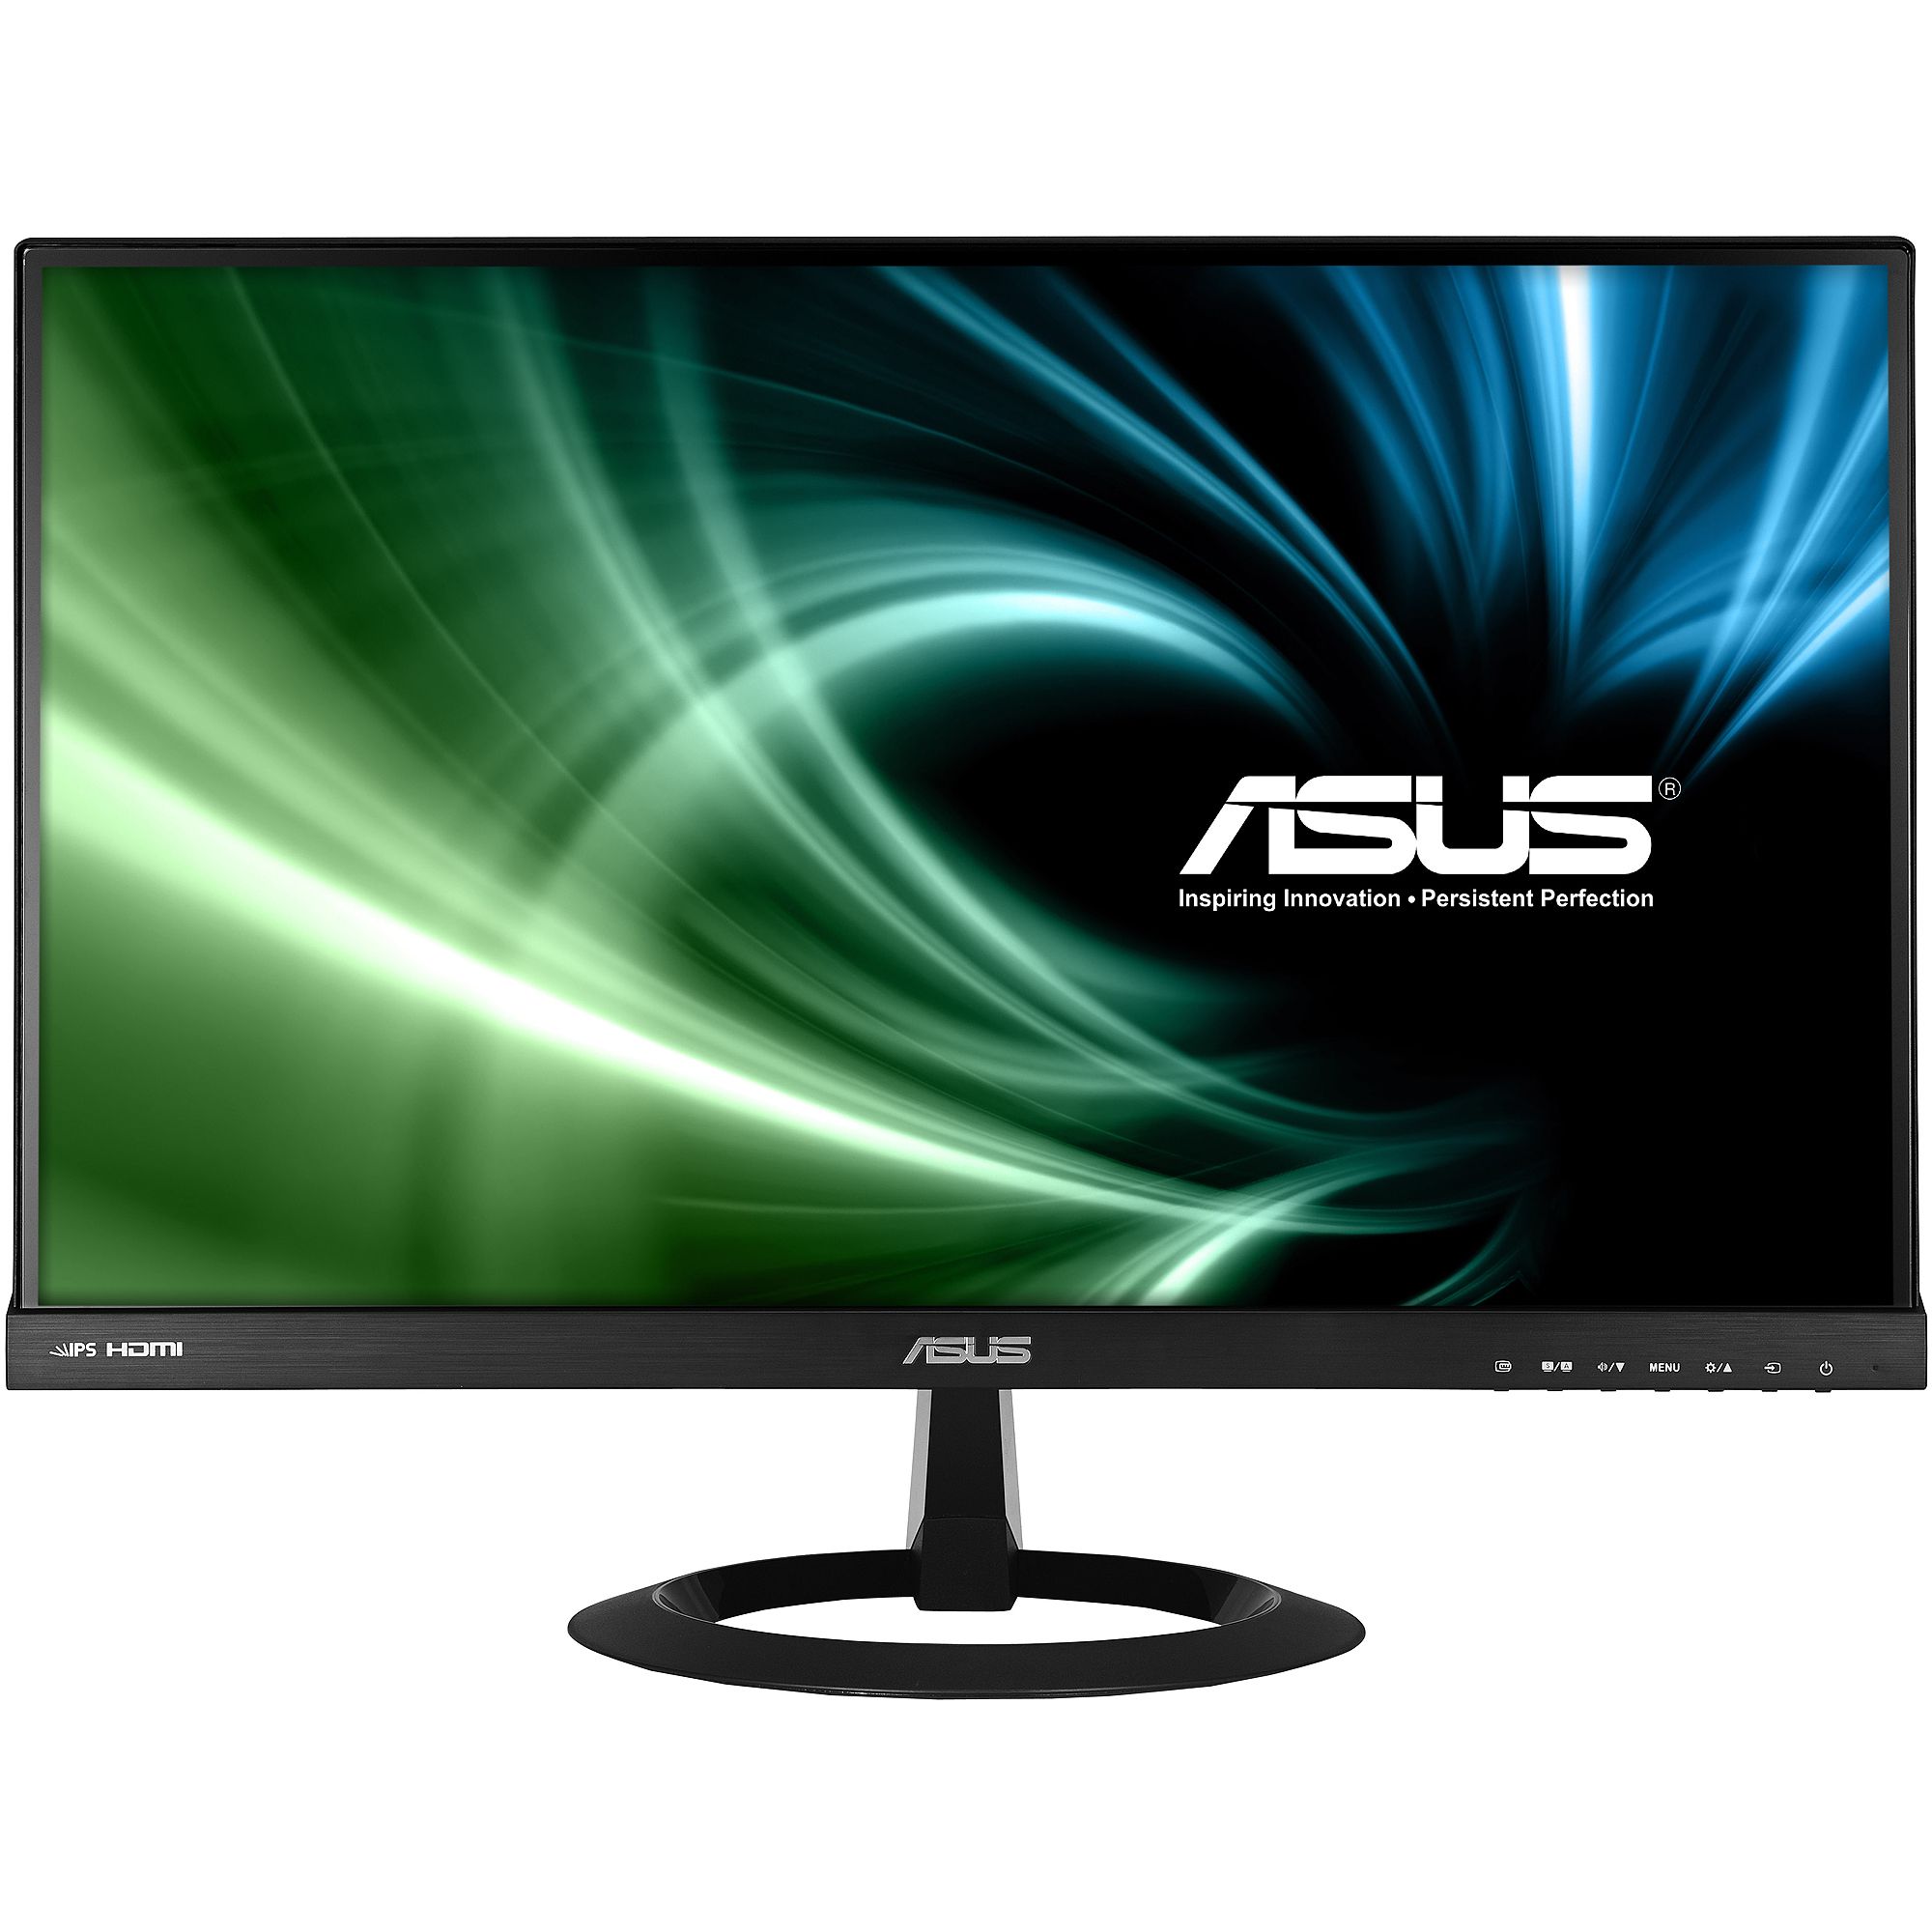  Monitor LED Asus VX229H, 21.5", Full HD, Negru 